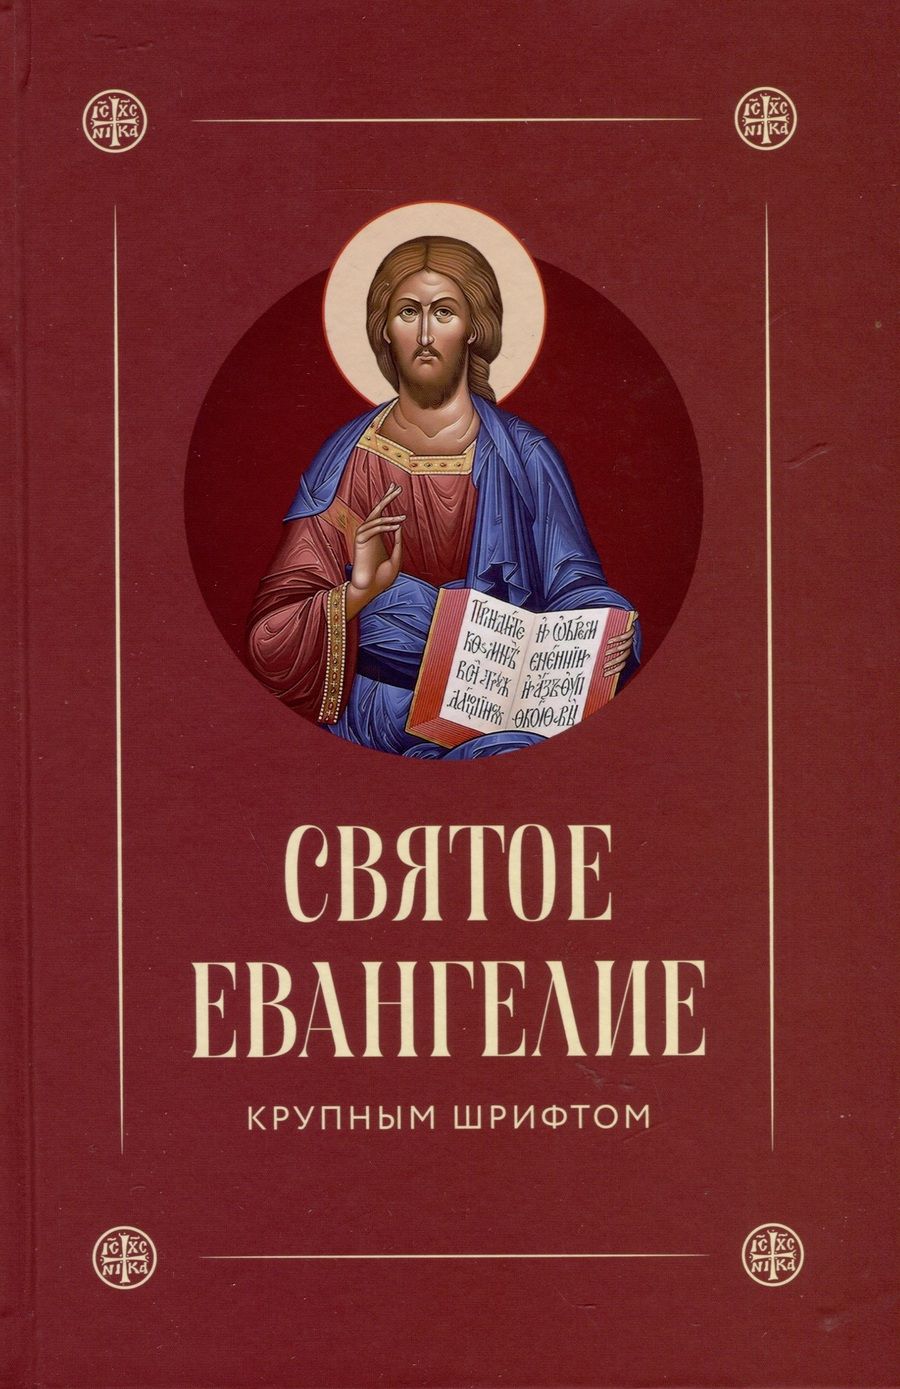 Обложка книги "Святое Евангелие. Крупным шрифтом"